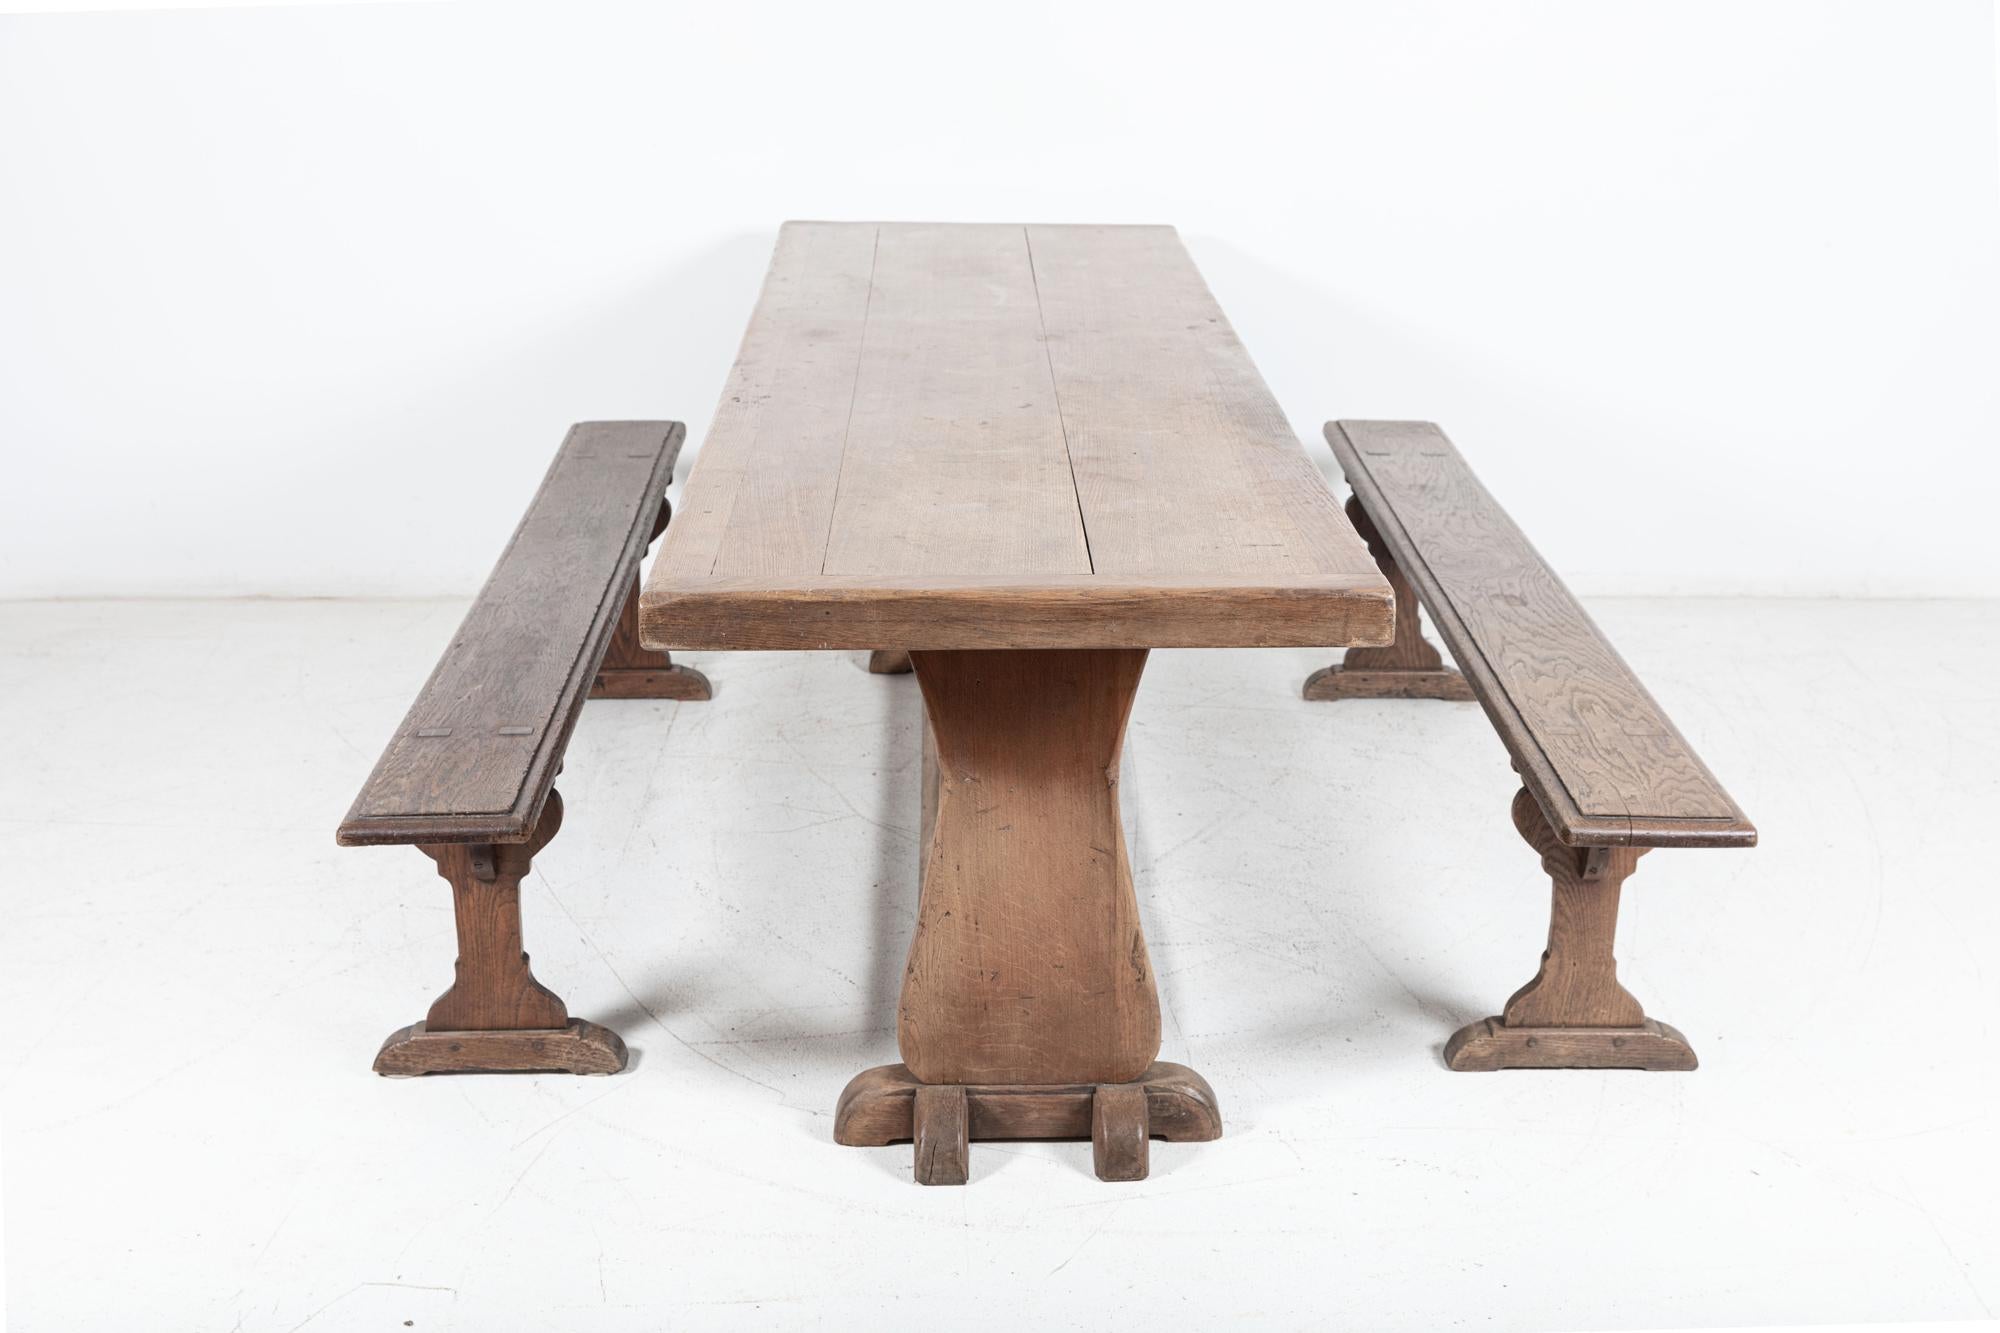 Etwa Mitte des 20. Jahrhunderts

Großer englischer Eichenbodentisch mit 6 cm dicker Eichenplatte

sku 878

(Bänke sind separat aufgeführt)

B240 x T72 x H76 cm
Boden bis Schürze 70 cm